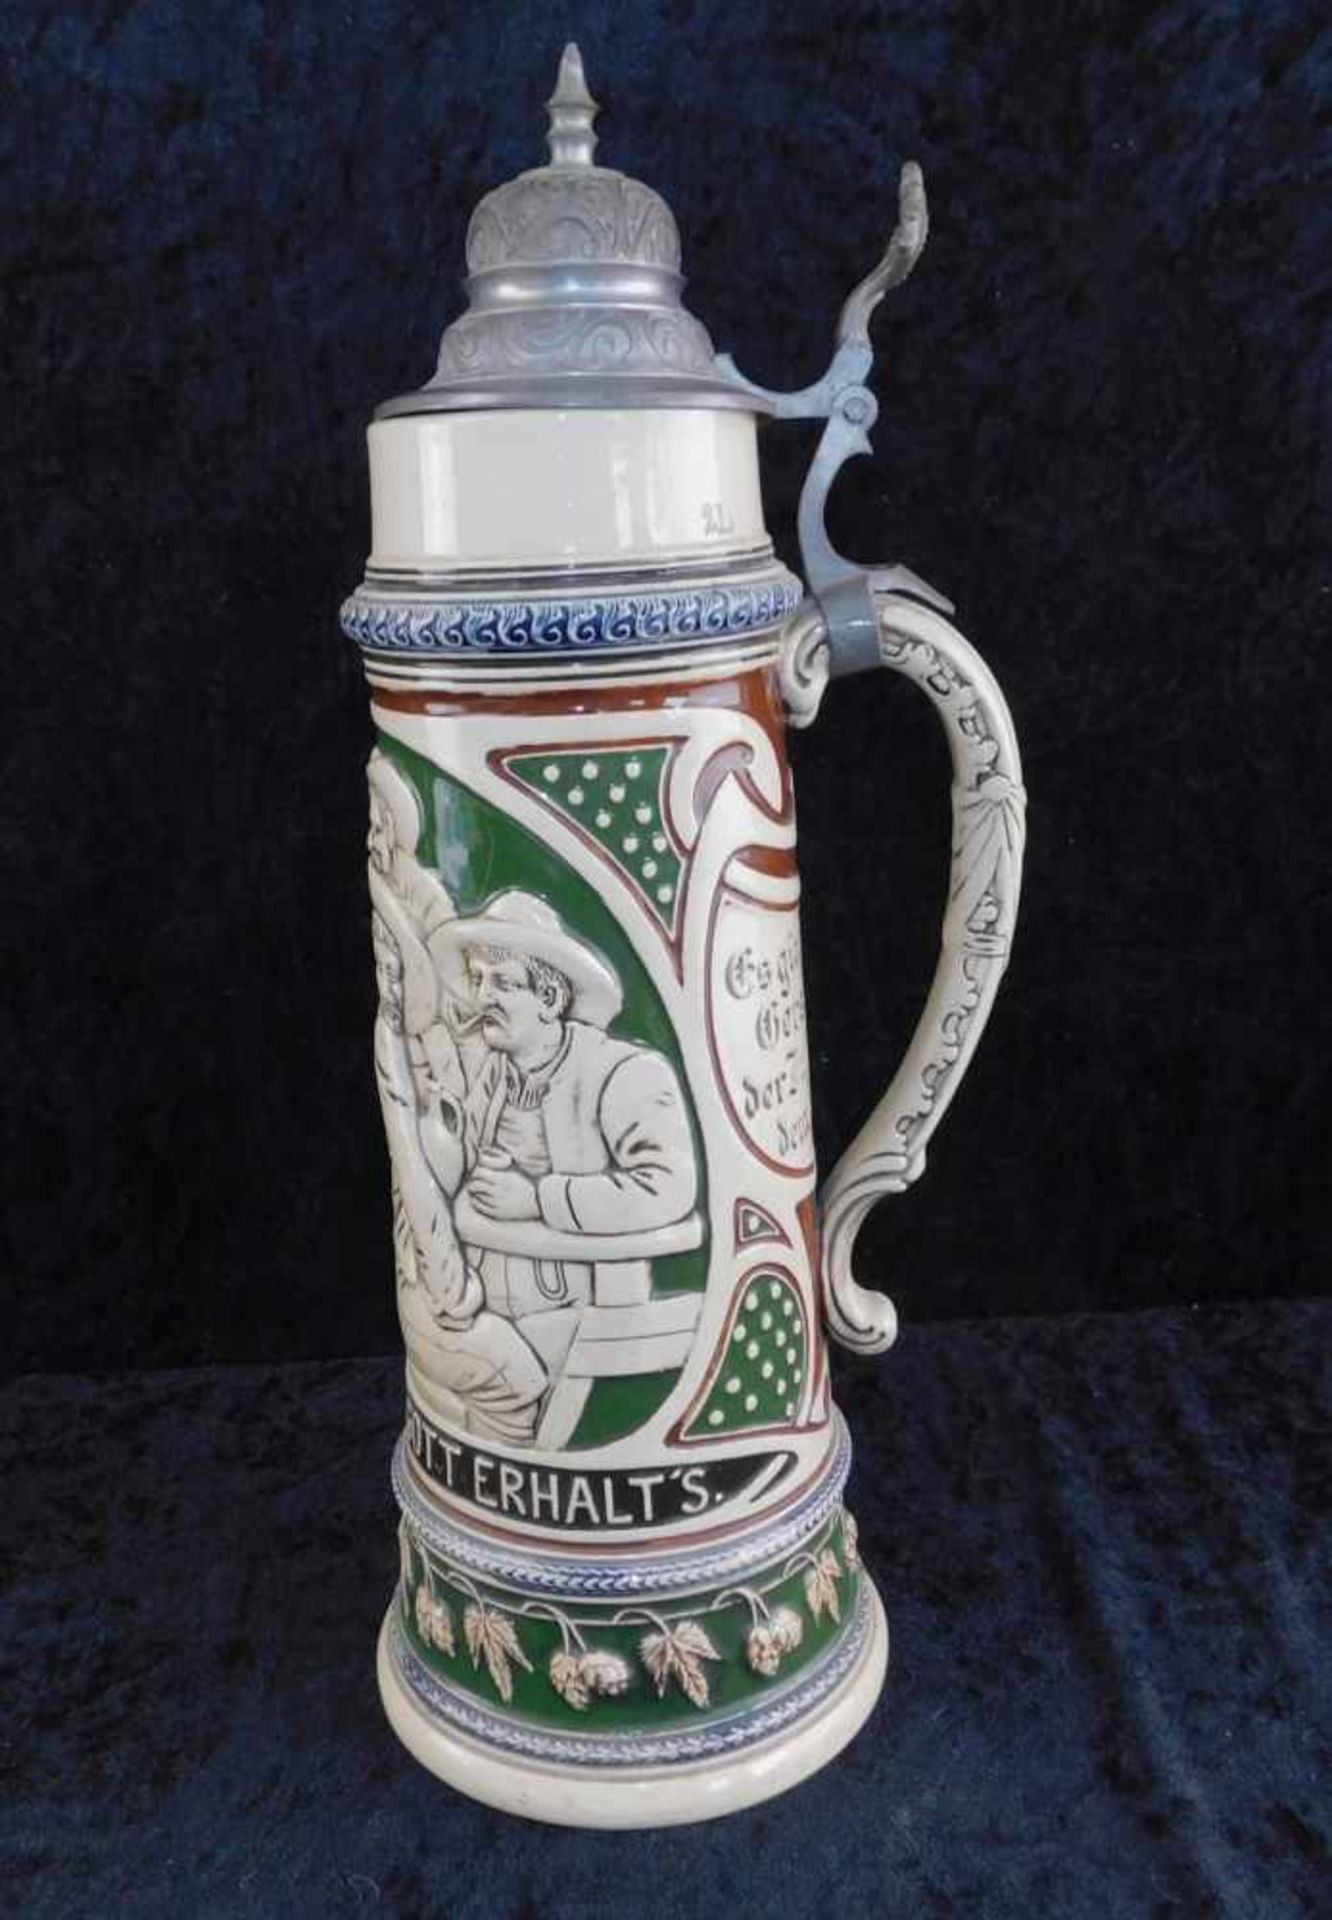 Großer Mettlach Krug mit Zinndeckel, Nr. 358, Keramik plastisch ausgeformt mit Sinnsprüchen